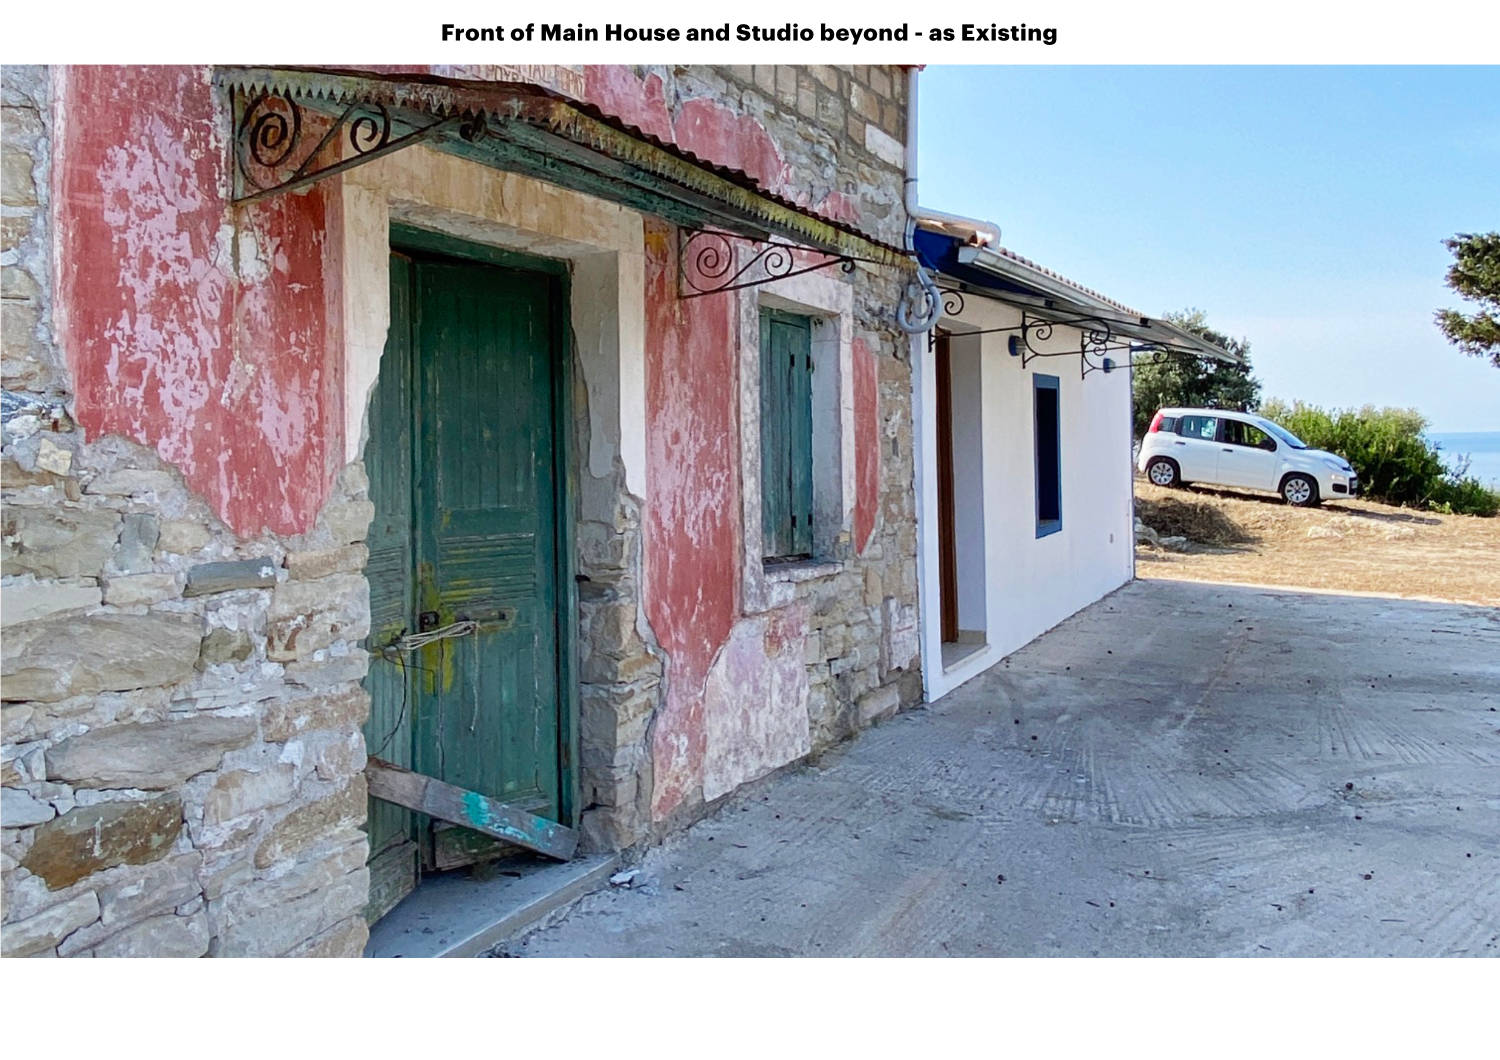 Rouvas Mathraki - Front of Main House and Studio Beyond